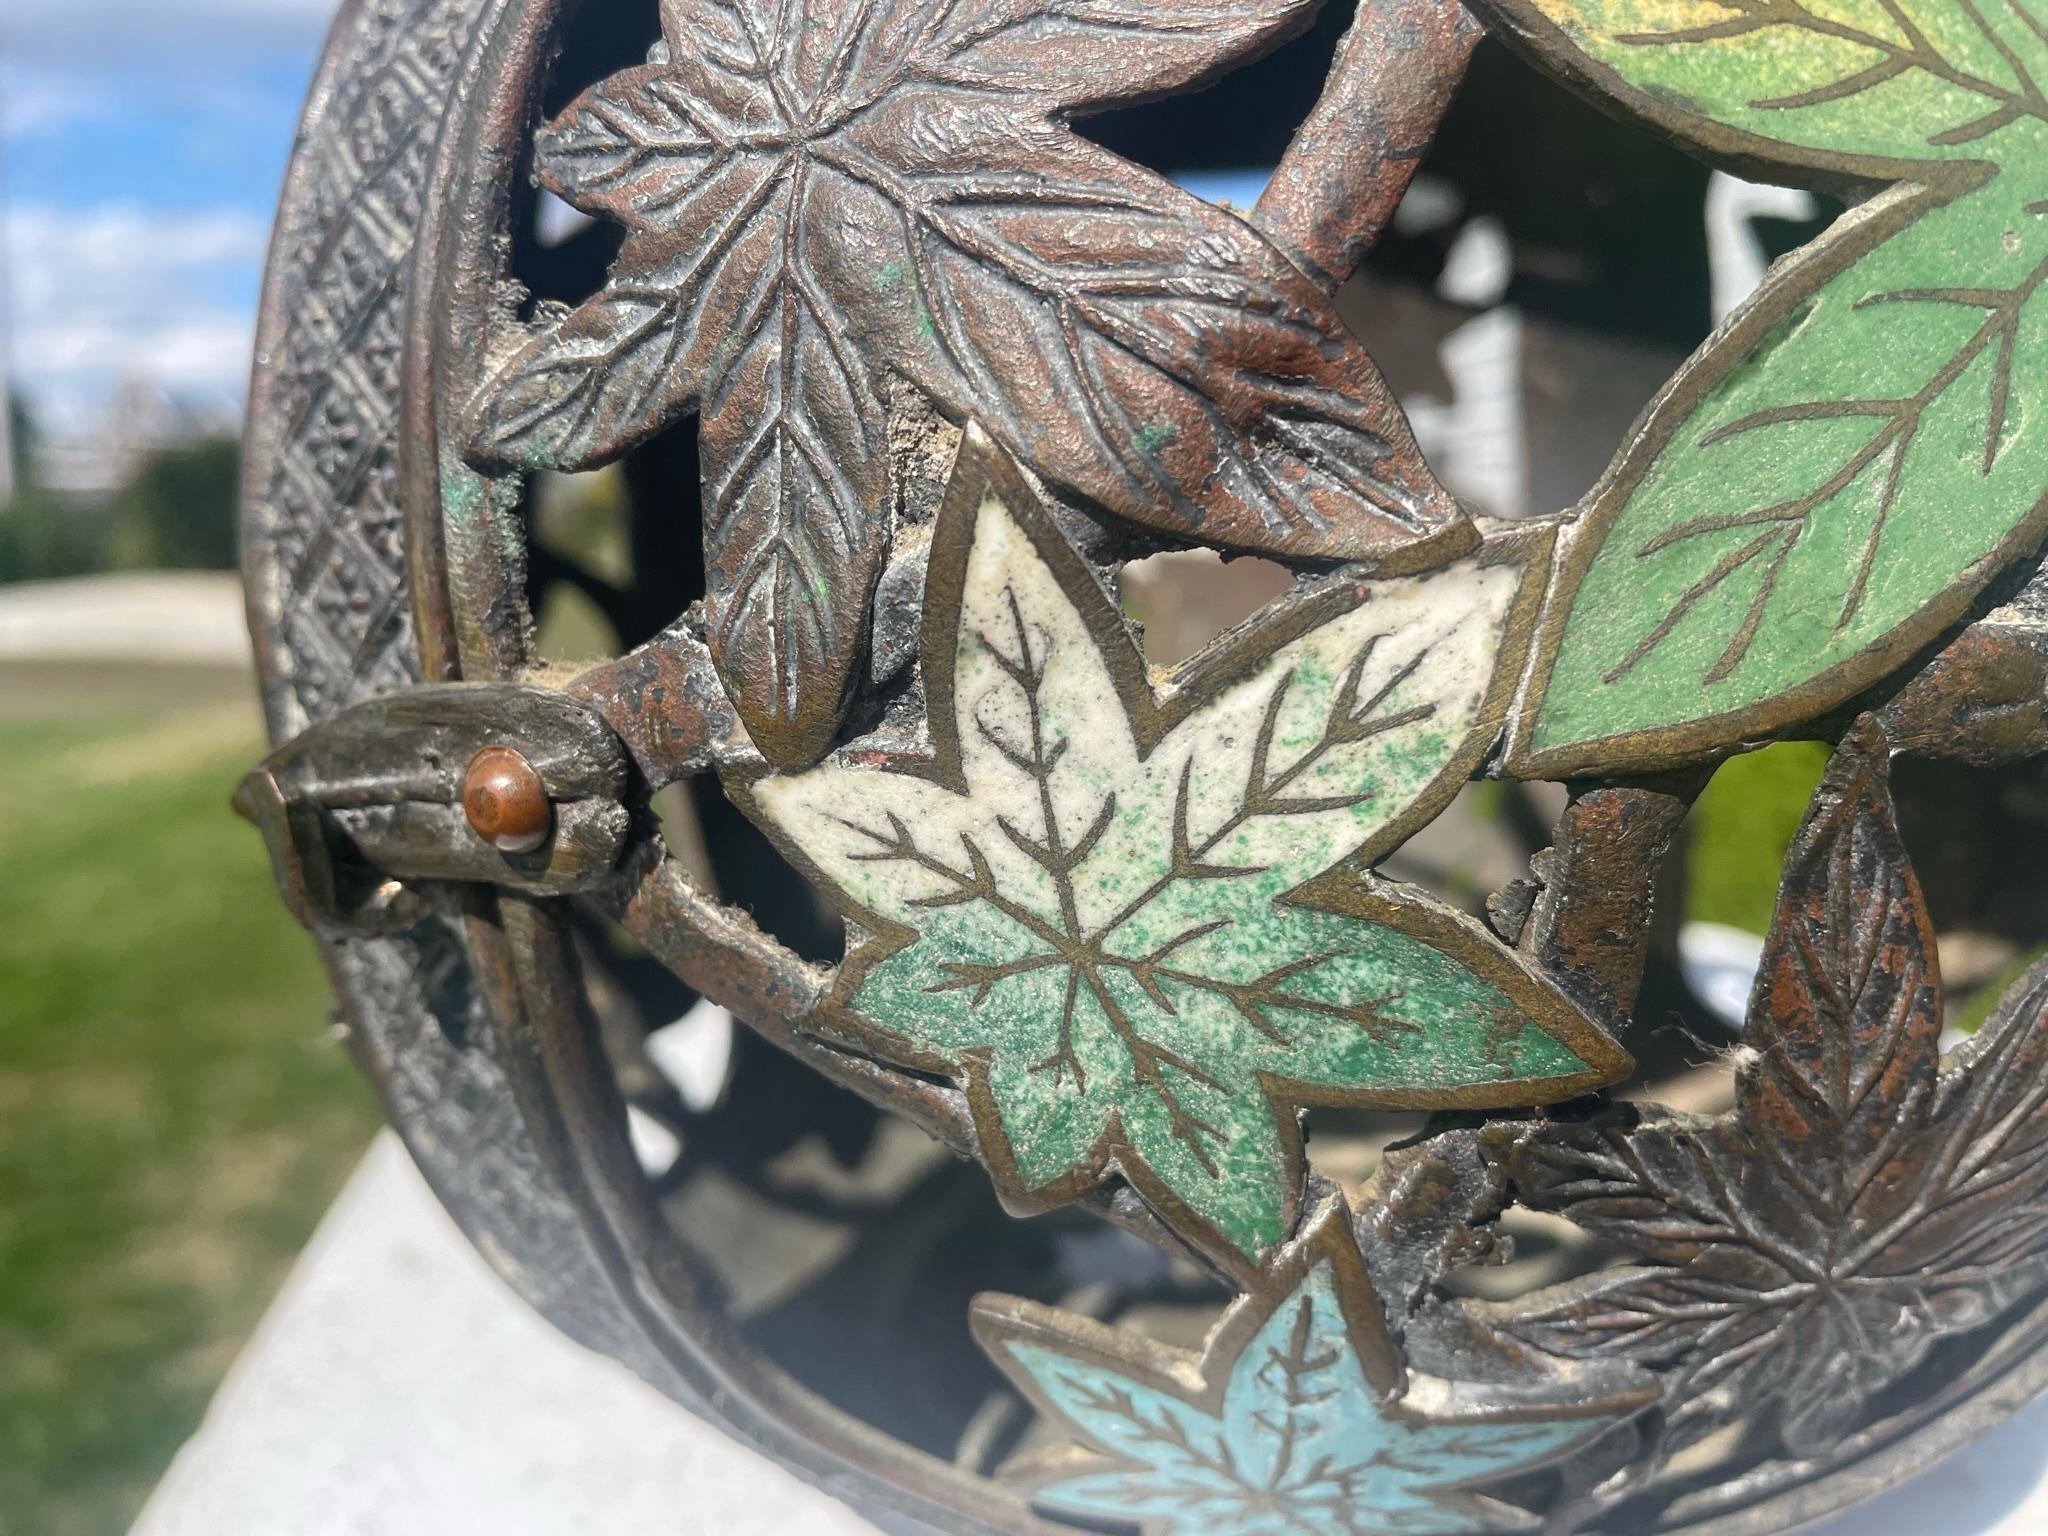 Japan Antique Champleve Maple Leaf Bronze Orb Lantern, Brilliant Colors 6